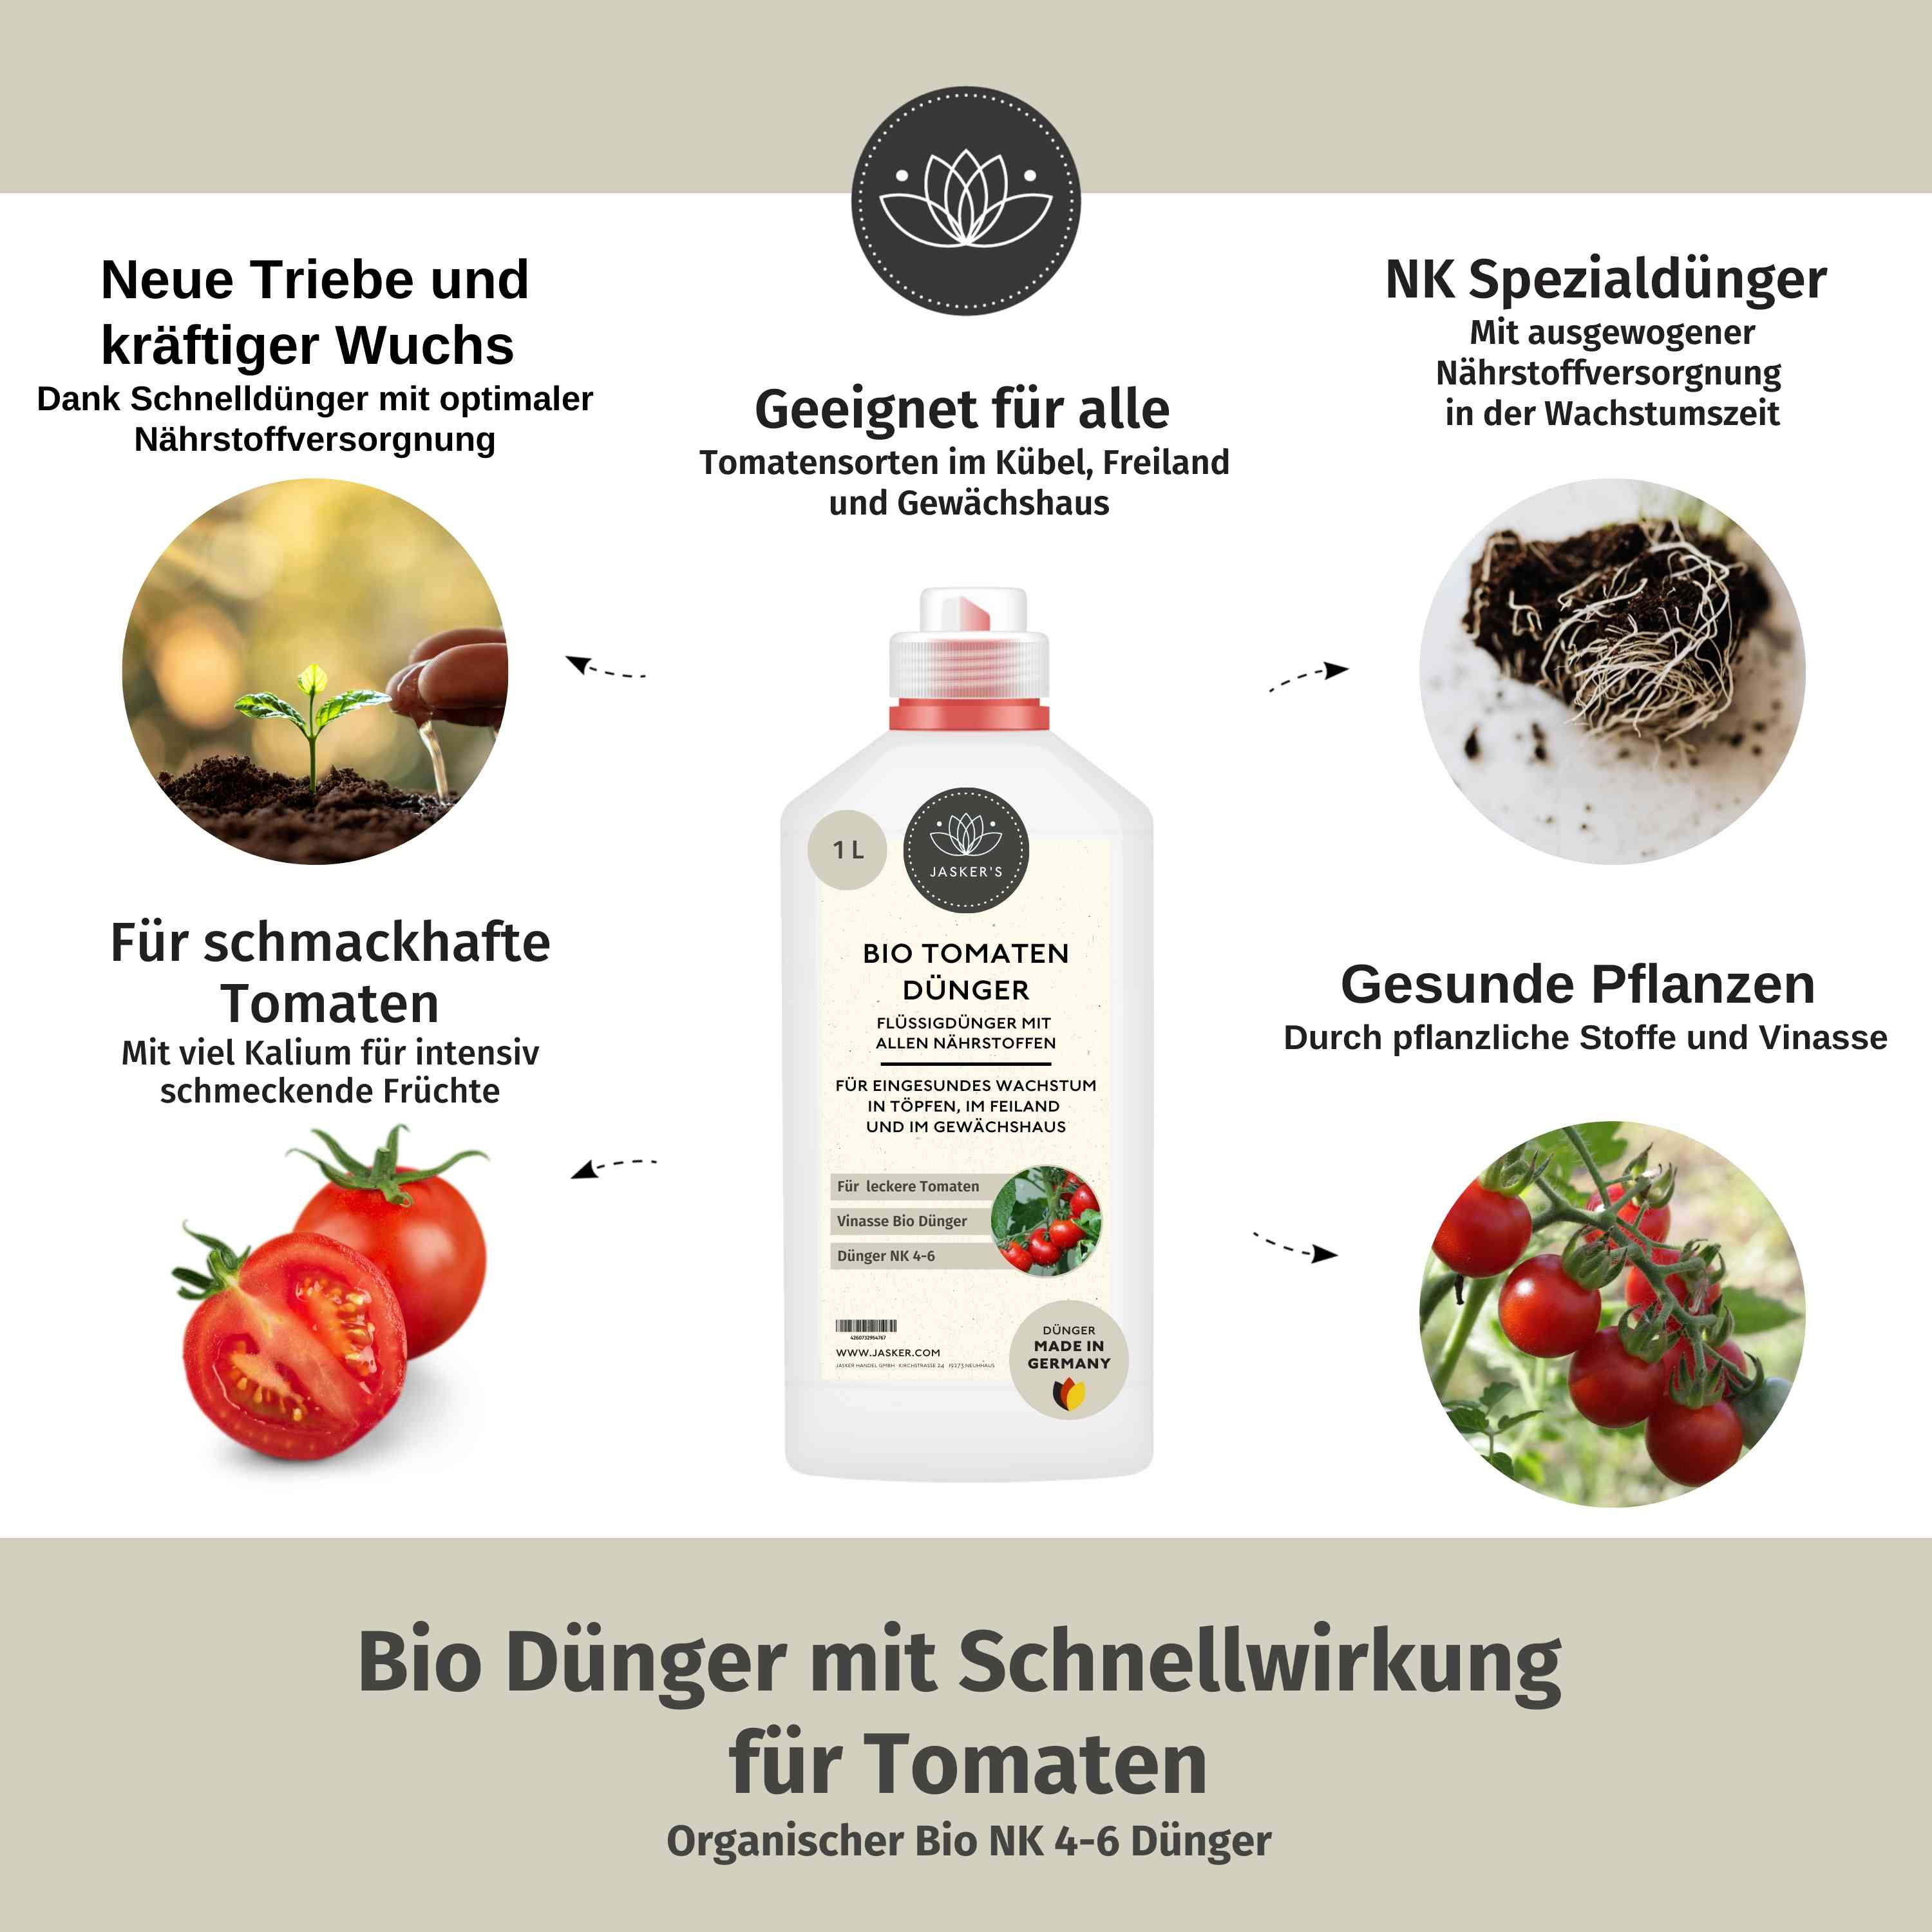 Tomatendünger Bio flüssig 500ml - Flüssigdünger für Tomaten